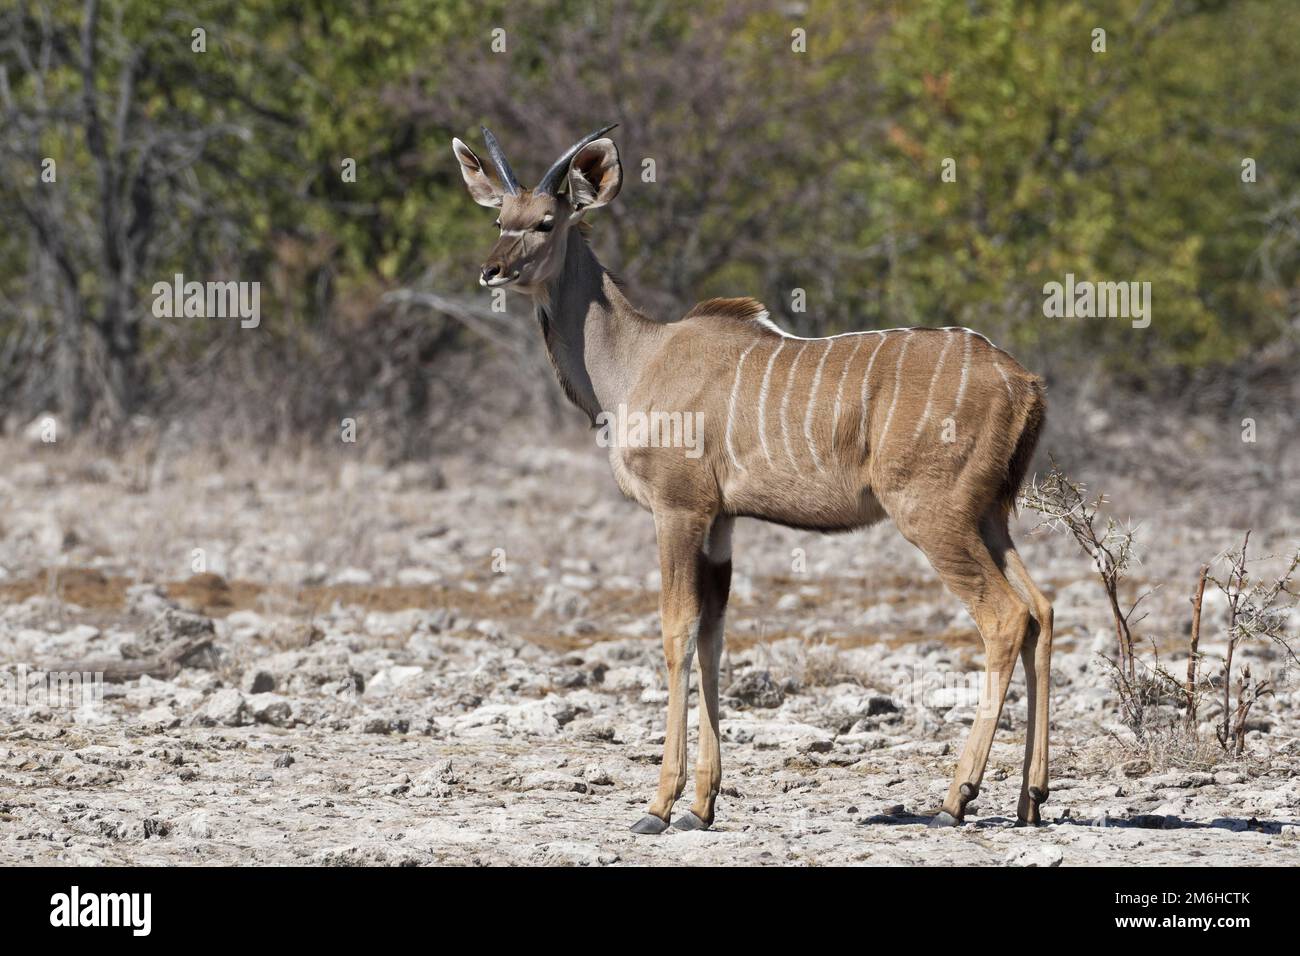 Großer Kudu (Tragelaphus strepsiceros), junges Männchen, auf aridem Boden stehend, wachsam, Etosha-Nationalpark, Namibia, Afrika Stockfoto